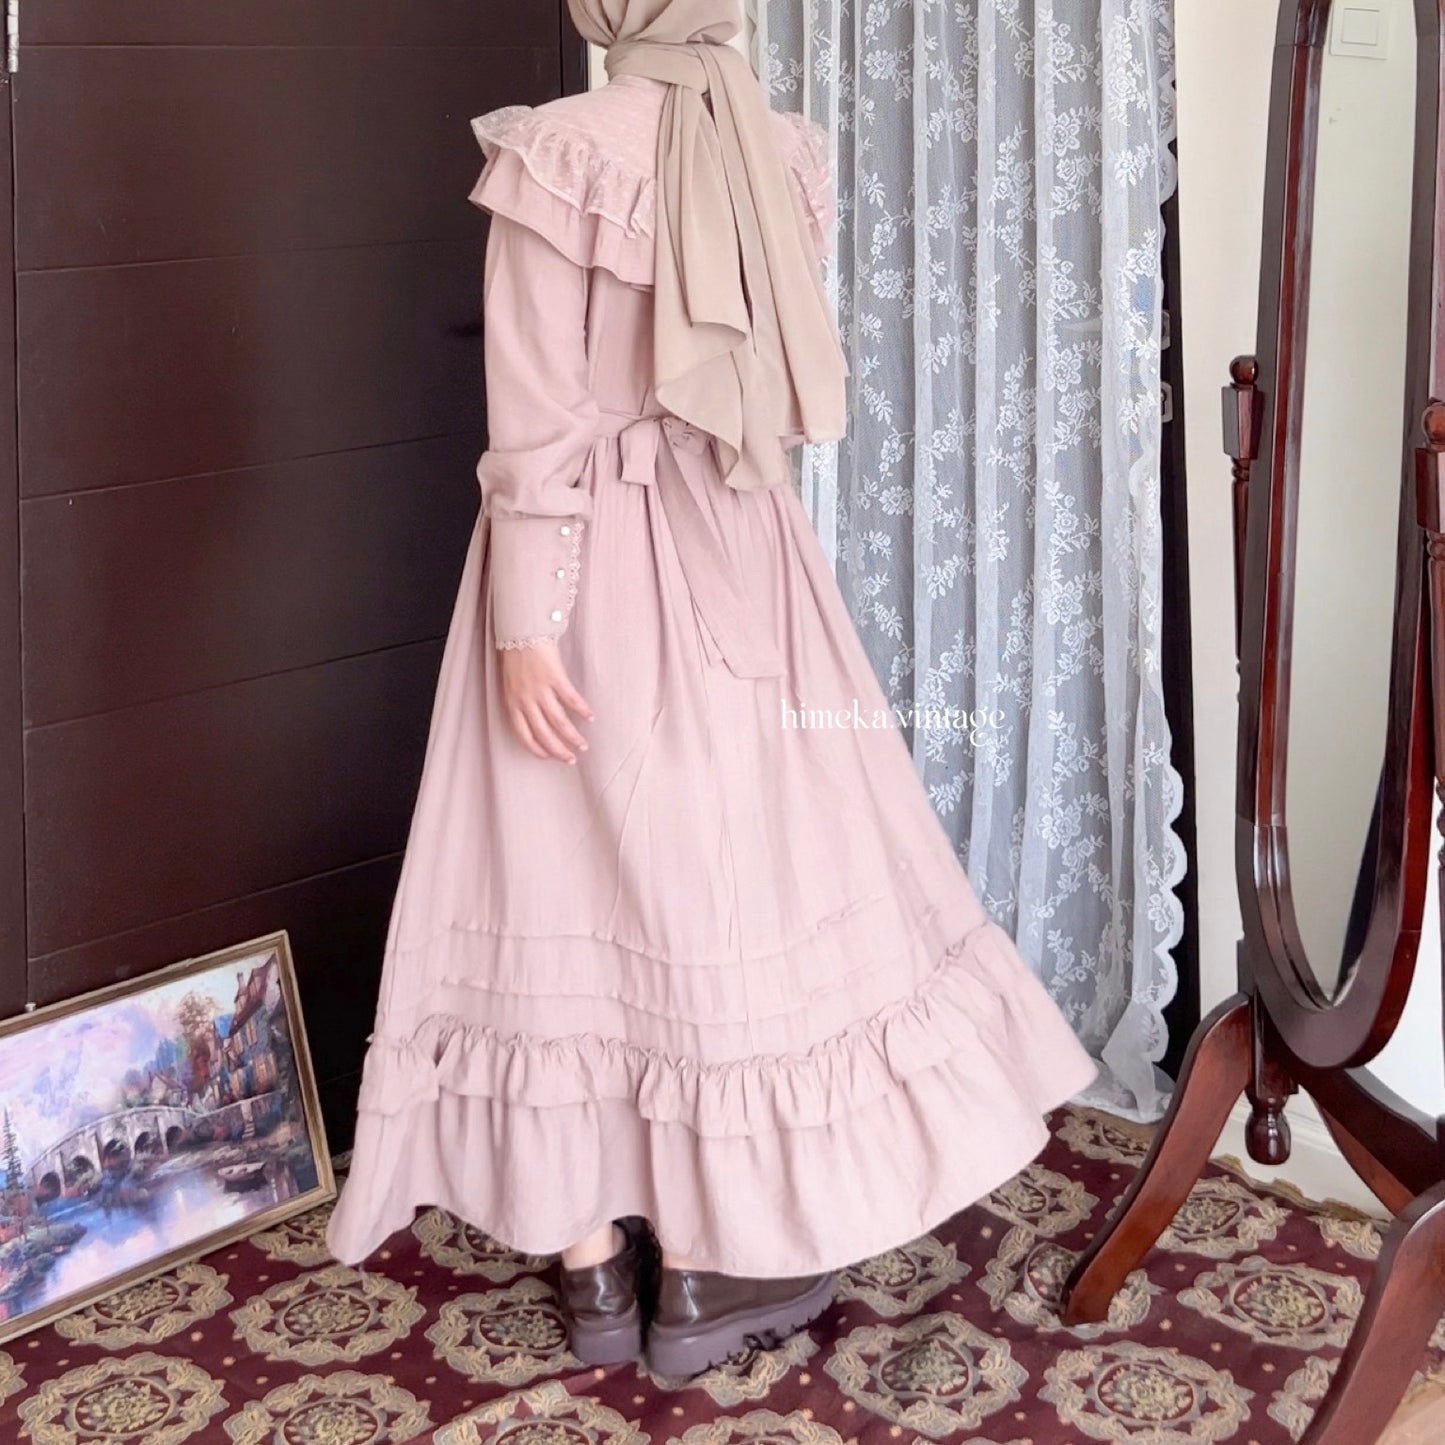 Helena Dress | Himeka Vintage